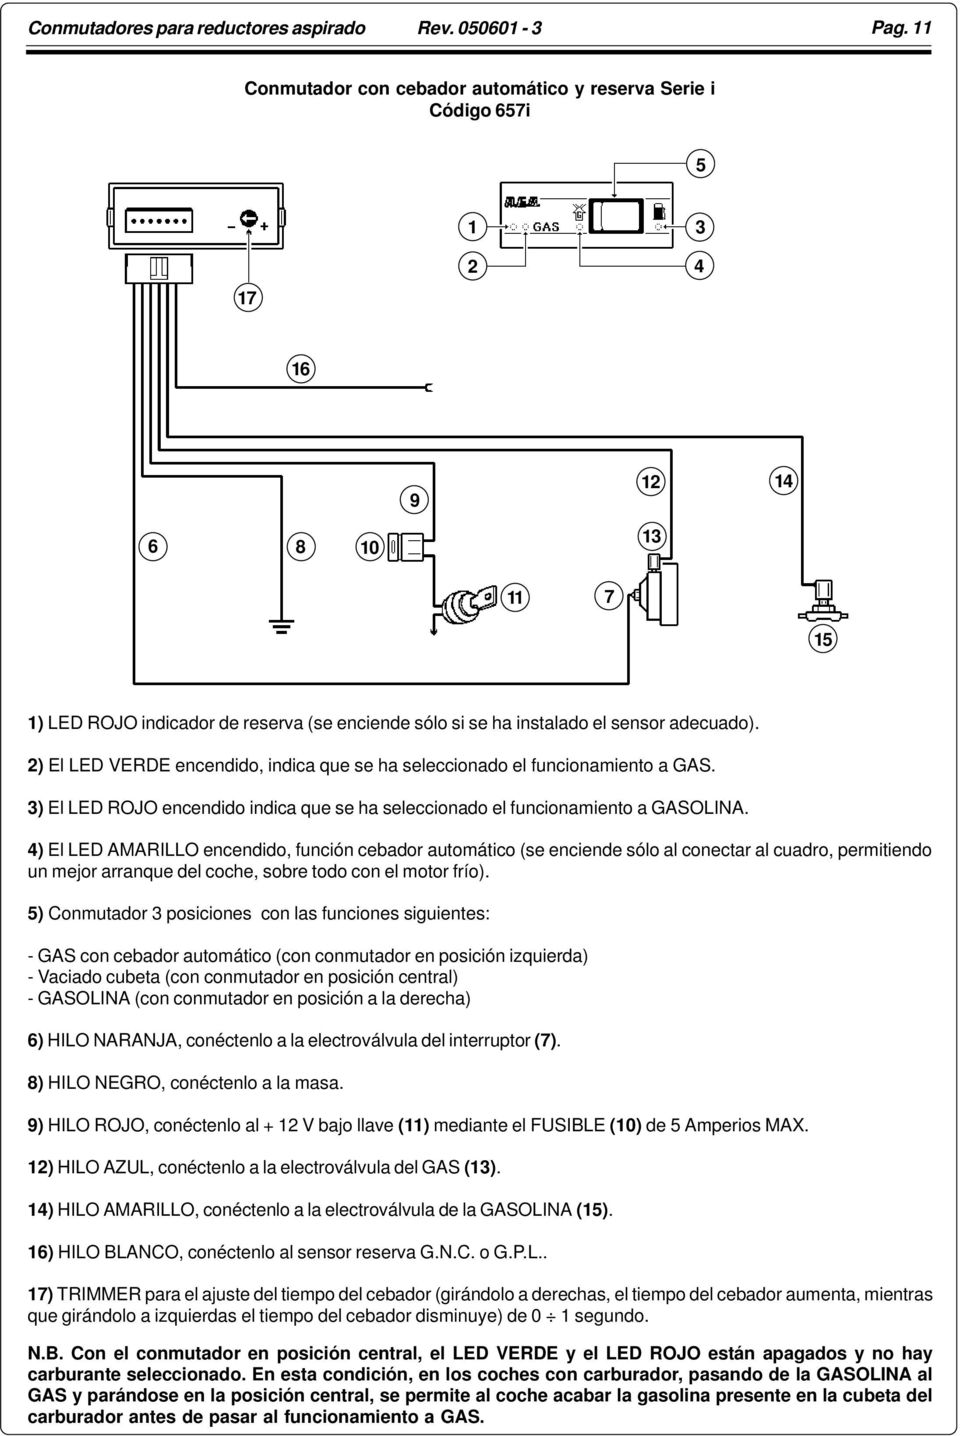 2) El LED VERDE encendido, indica que se ha seleccionado el funcionamiento a GAS. 3) El LED ROJO encendido indica que se ha seleccionado el funcionamiento a GASOLINA.